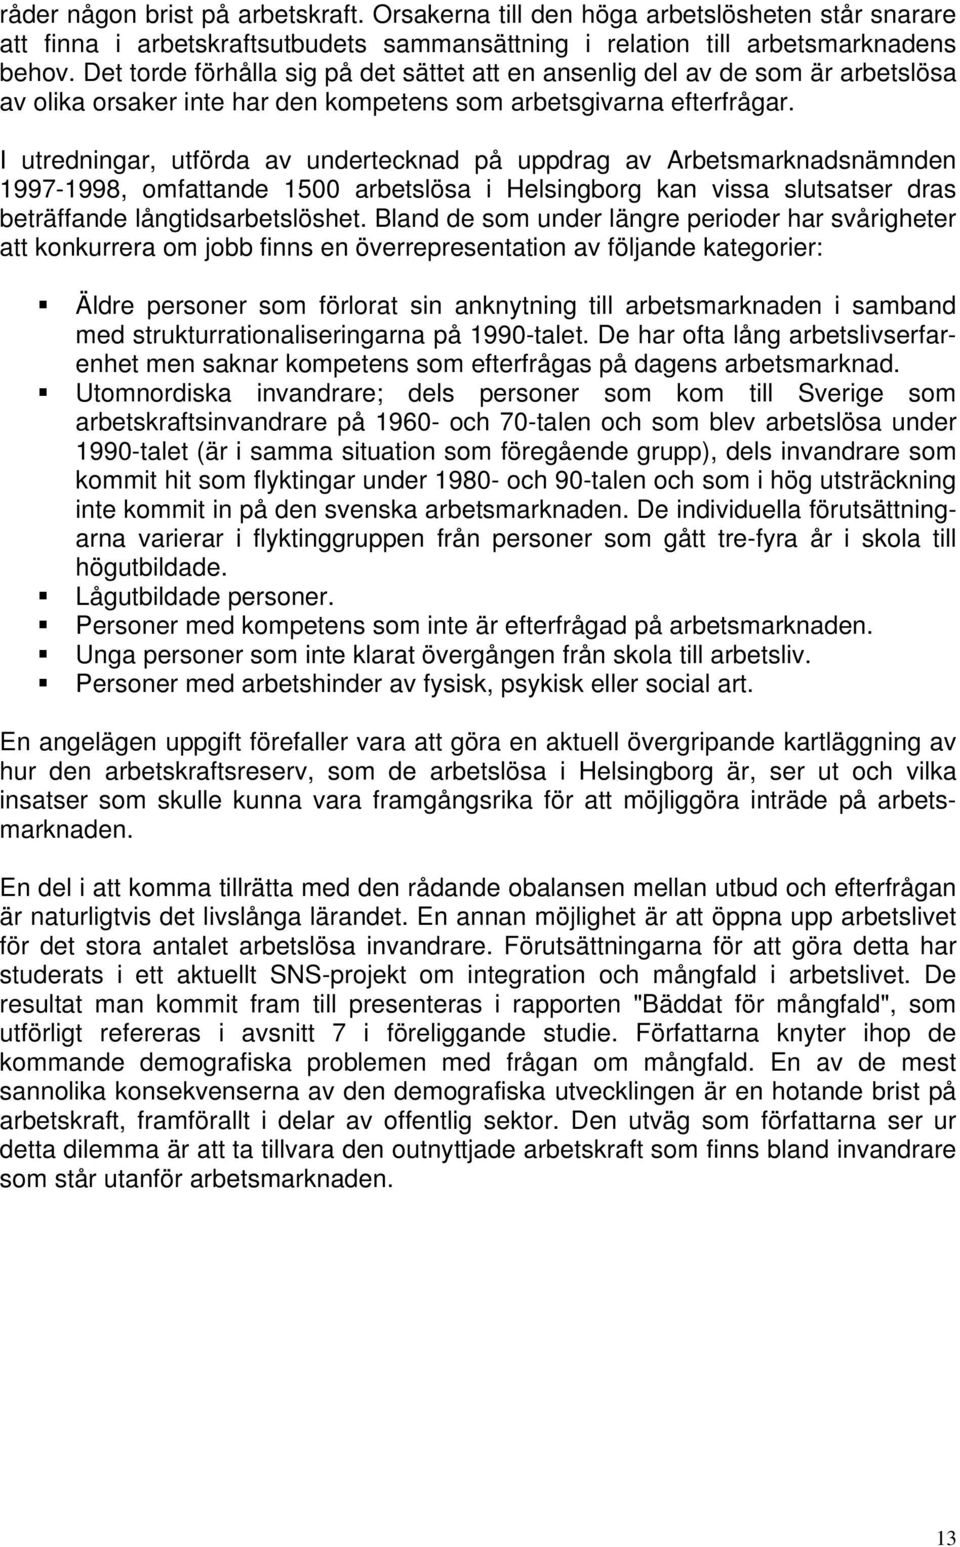 I utredningar, utförda av undertecknad på uppdrag av Arbetsmarknadsnämnden 1997-1998, omfattande 1500 arbetslösa i Helsingborg kan vissa slutsatser dras beträffande långtidsarbetslöshet.